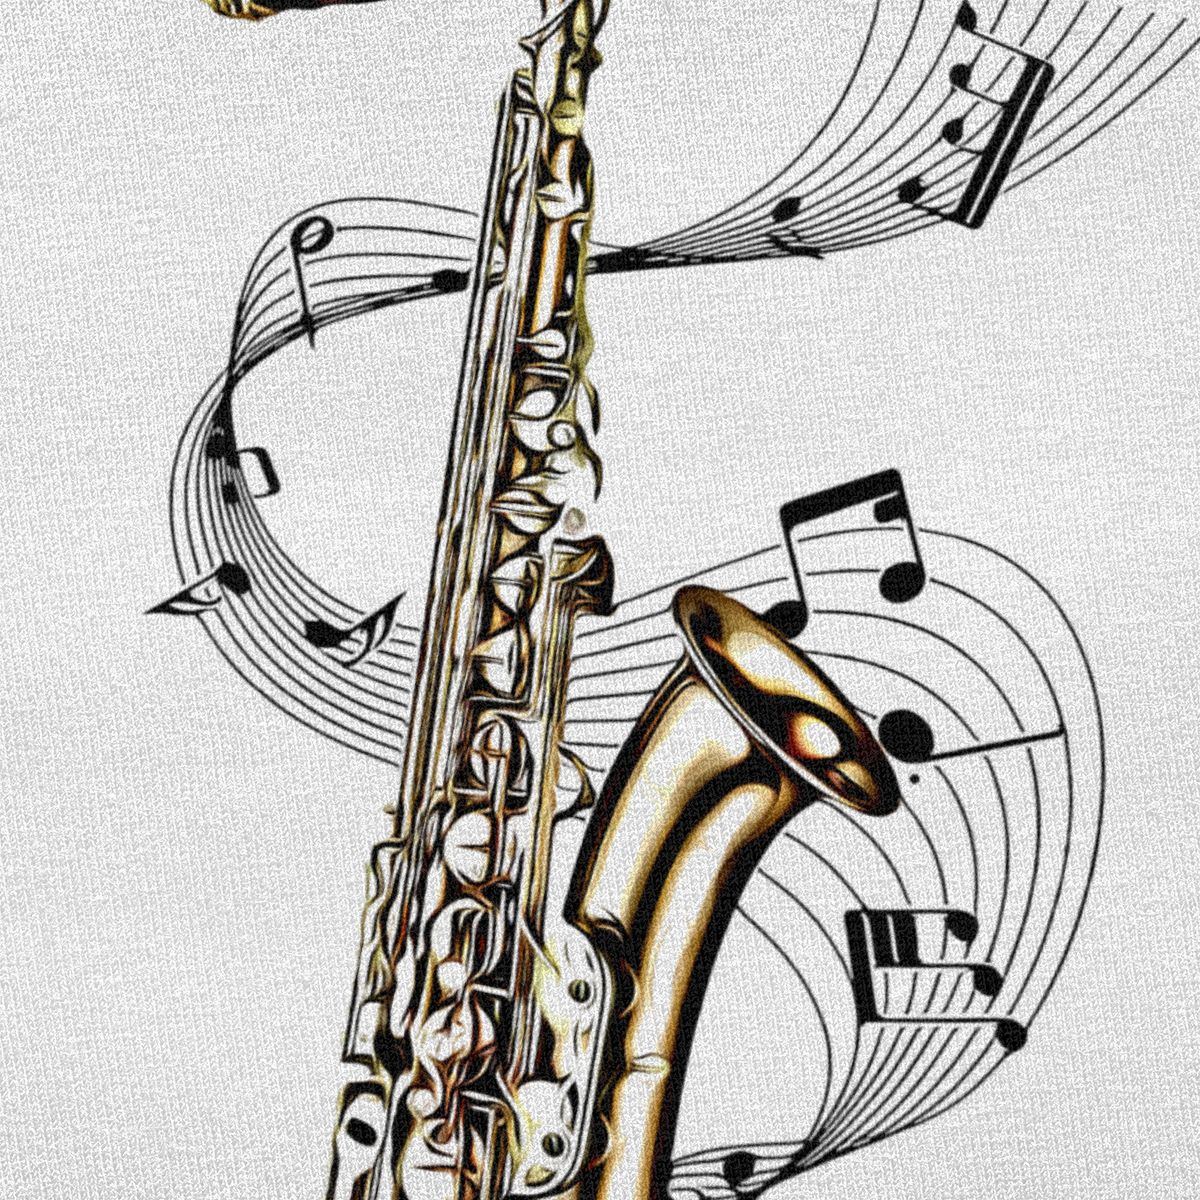 T-shirt Saxophone Instrument Musique - Créer Son T-shirt